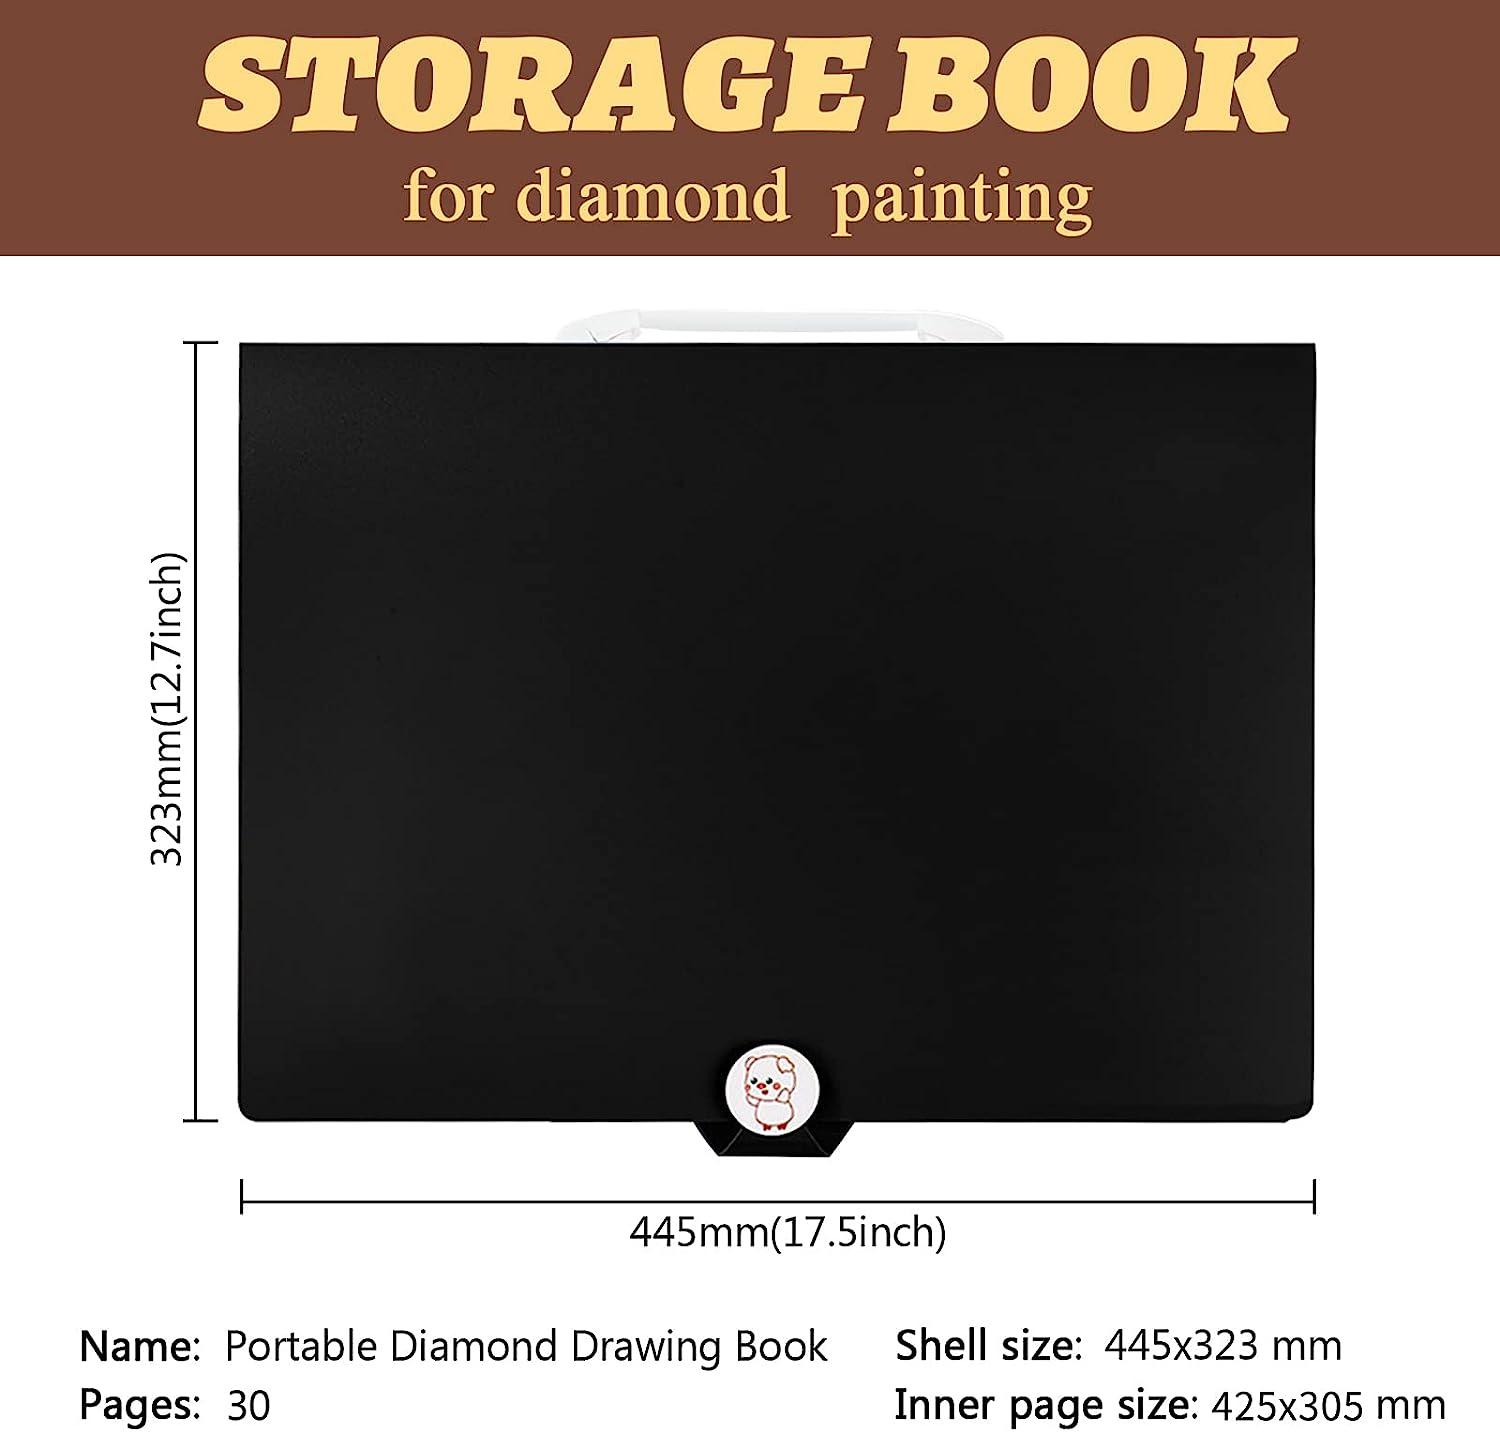 A3 Diamond Painting Storage Book, Large Diamond Art Storage